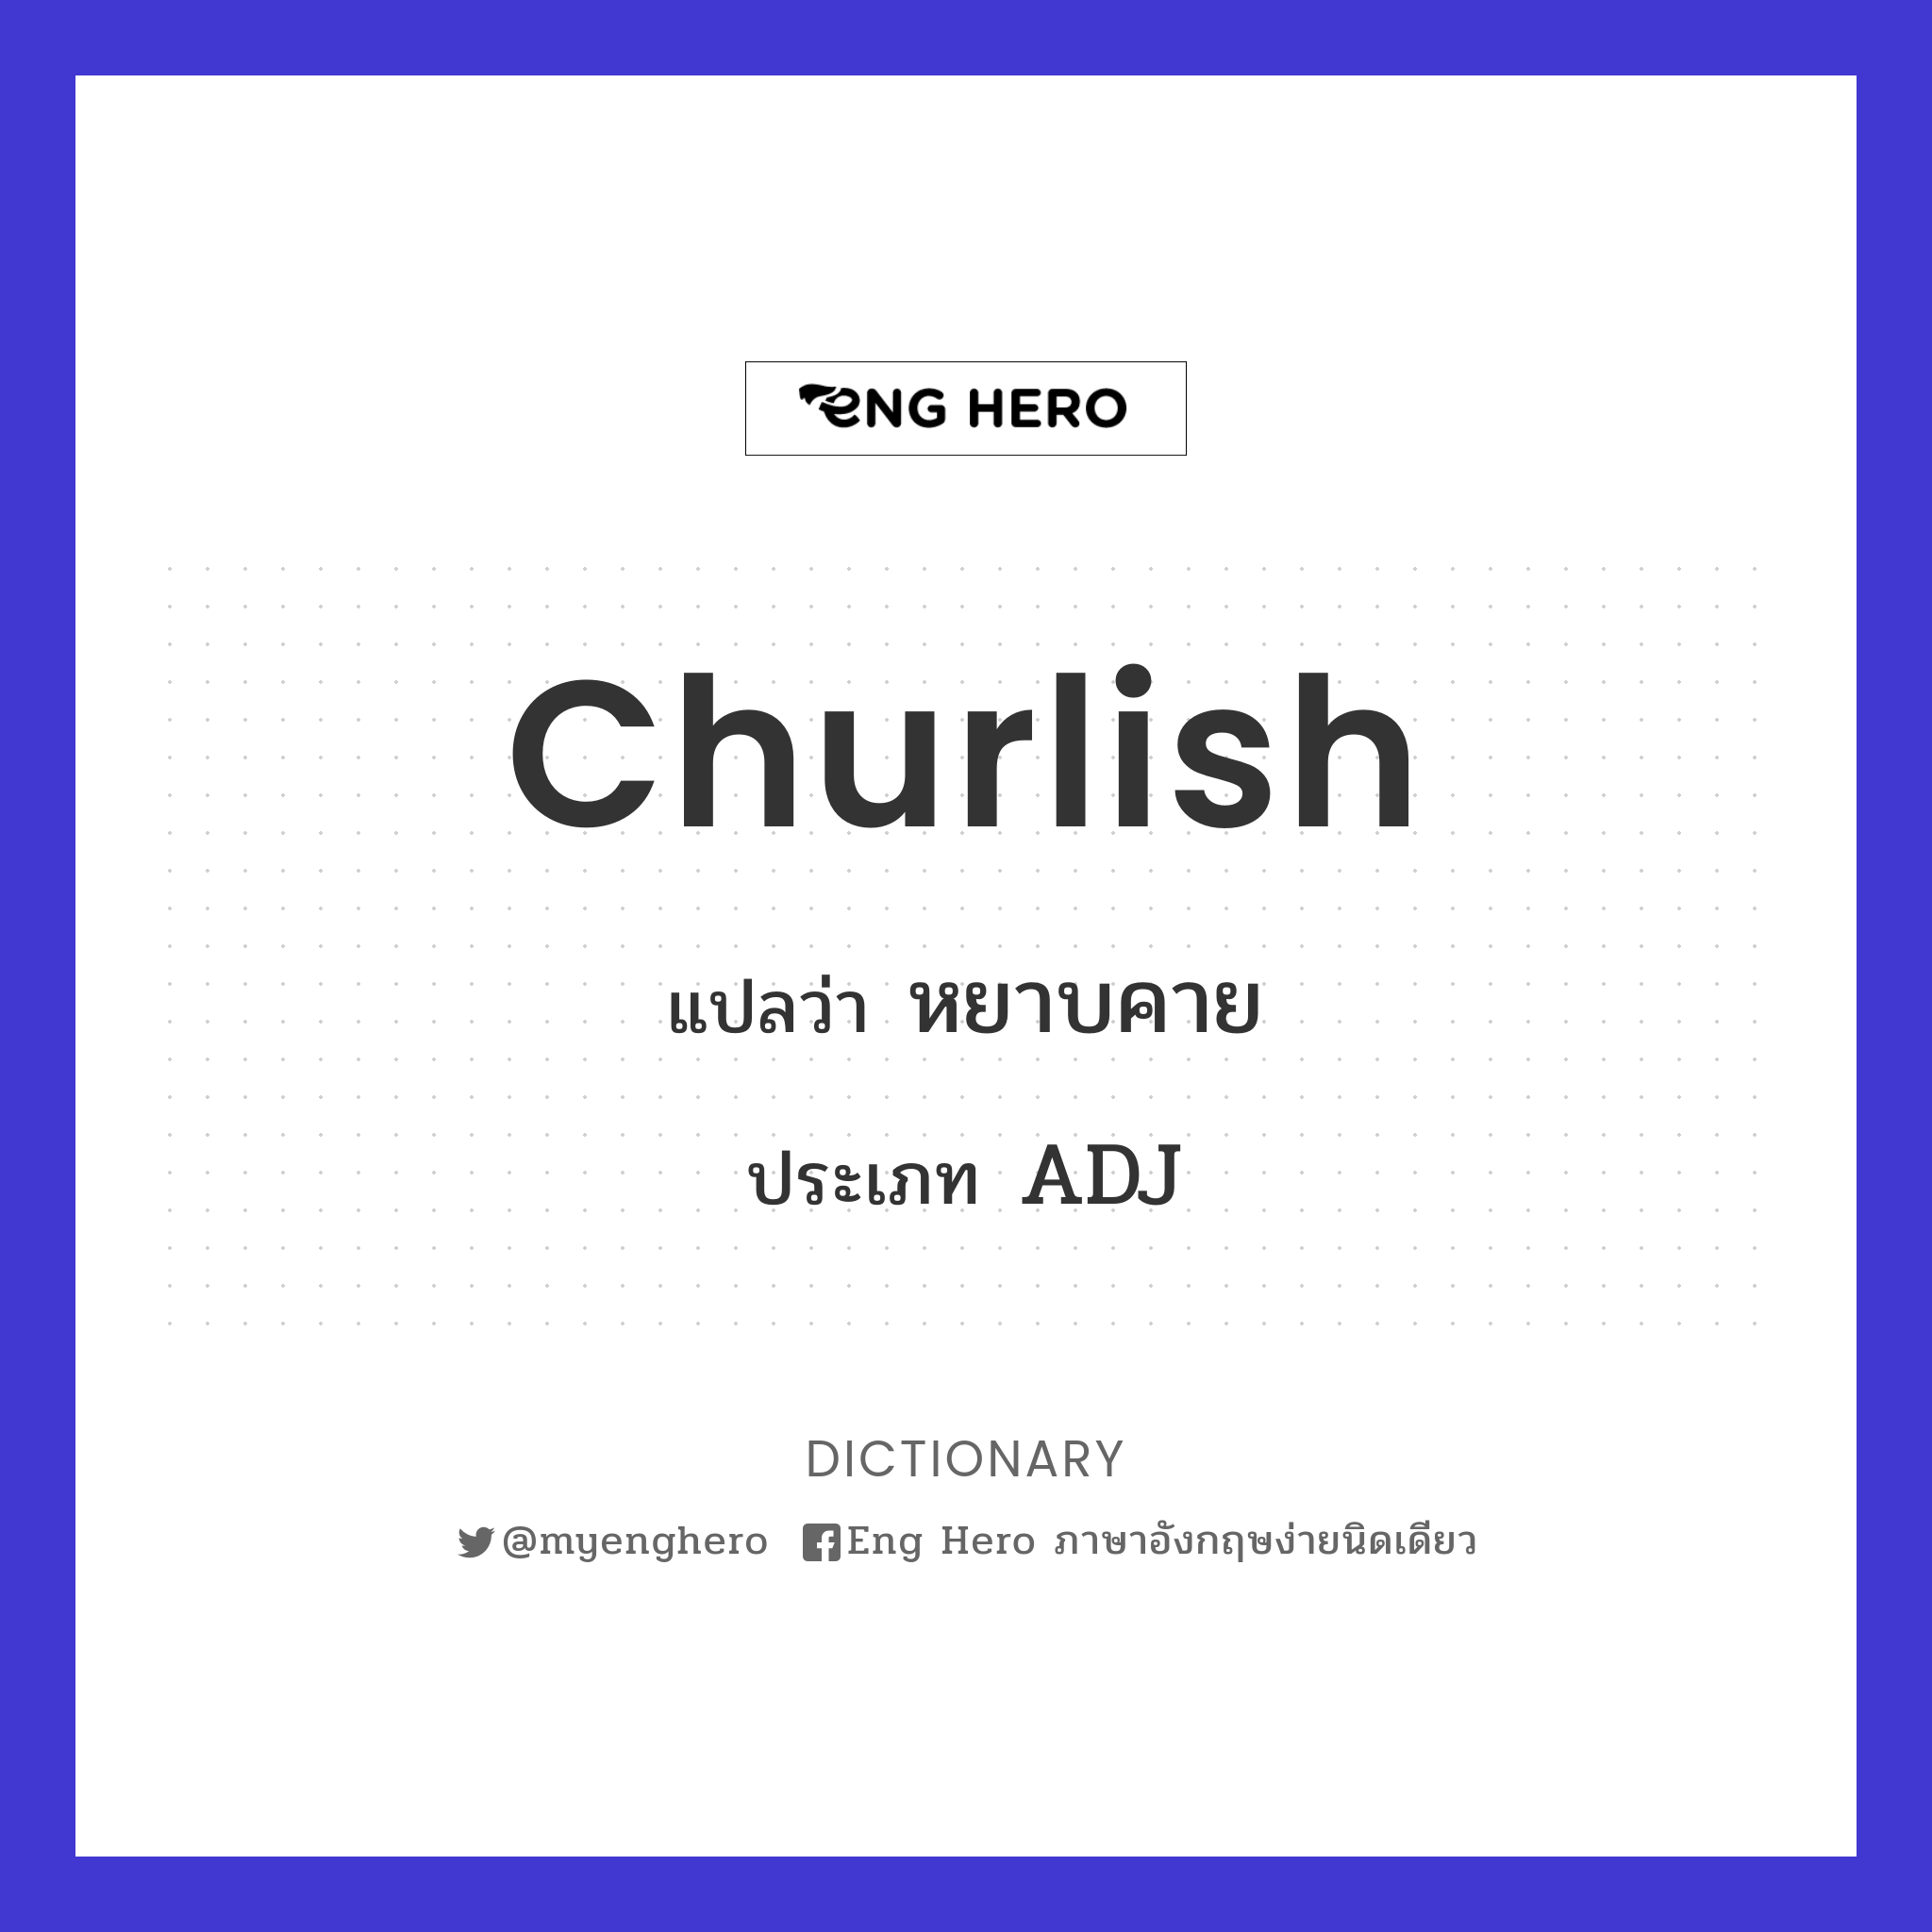 churlish